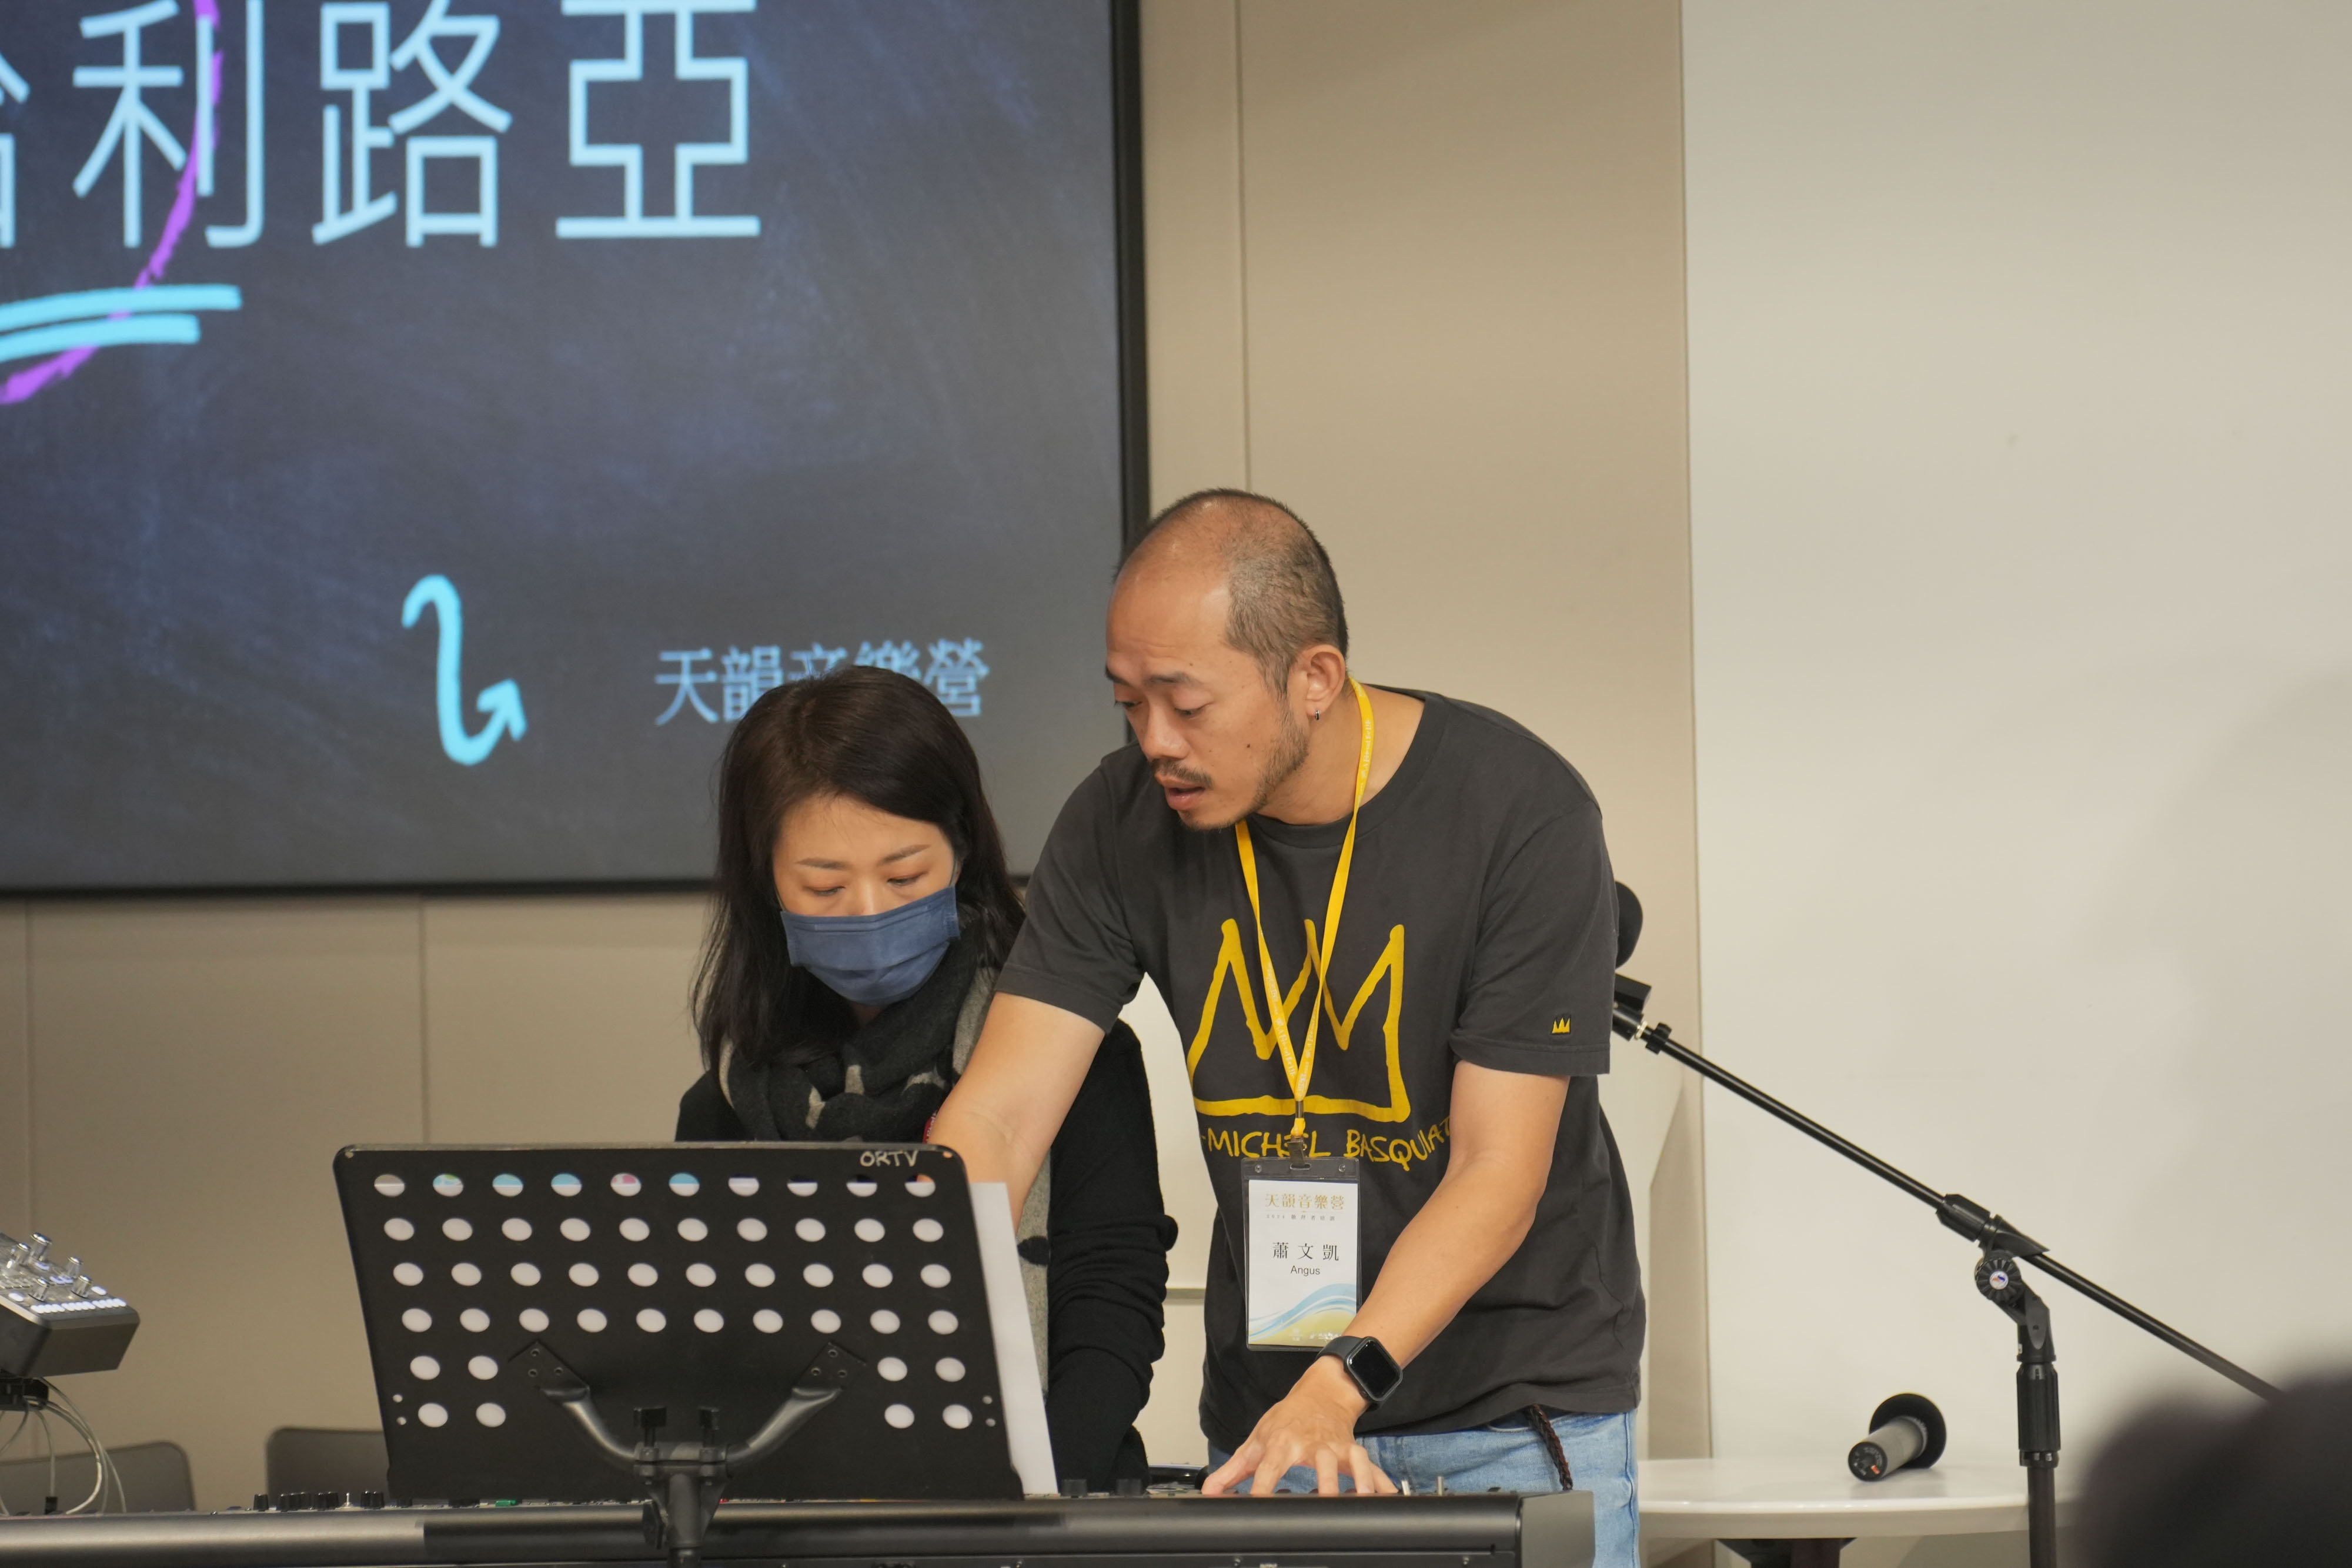 天韻製作人蕭文凱老師(右)現場指導負責Keyboard的學員